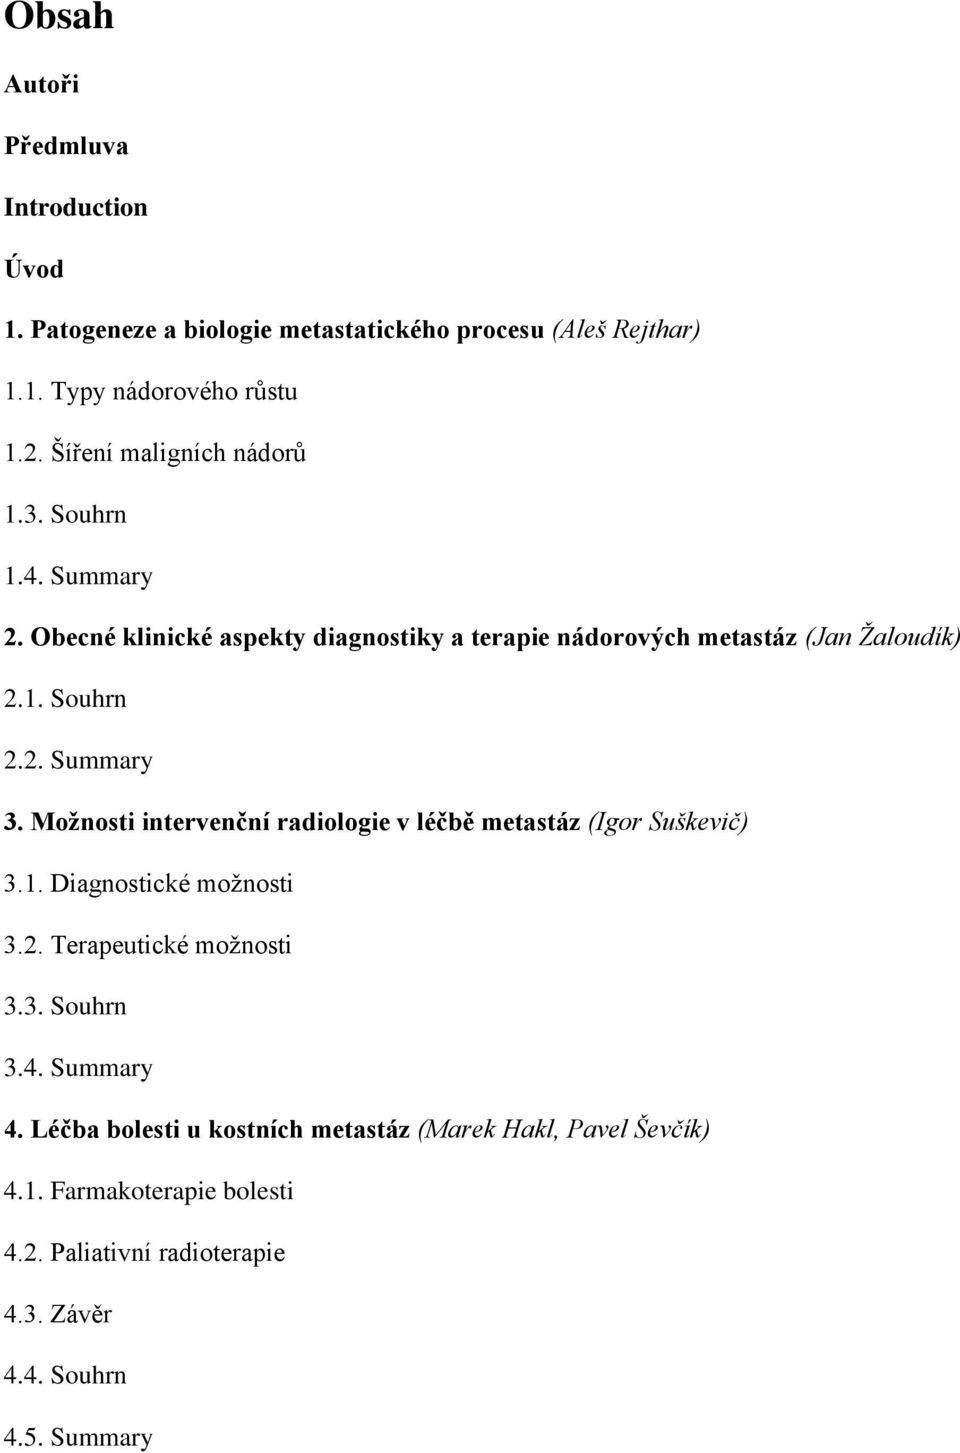 Možnosti intervenční radiologie v léčbě metastáz (Igor Suškevič) 3.1. Diagnostické možnosti 3.2. Terapeutické možnosti 3.3. Souhrn 3.4. Summary 4.